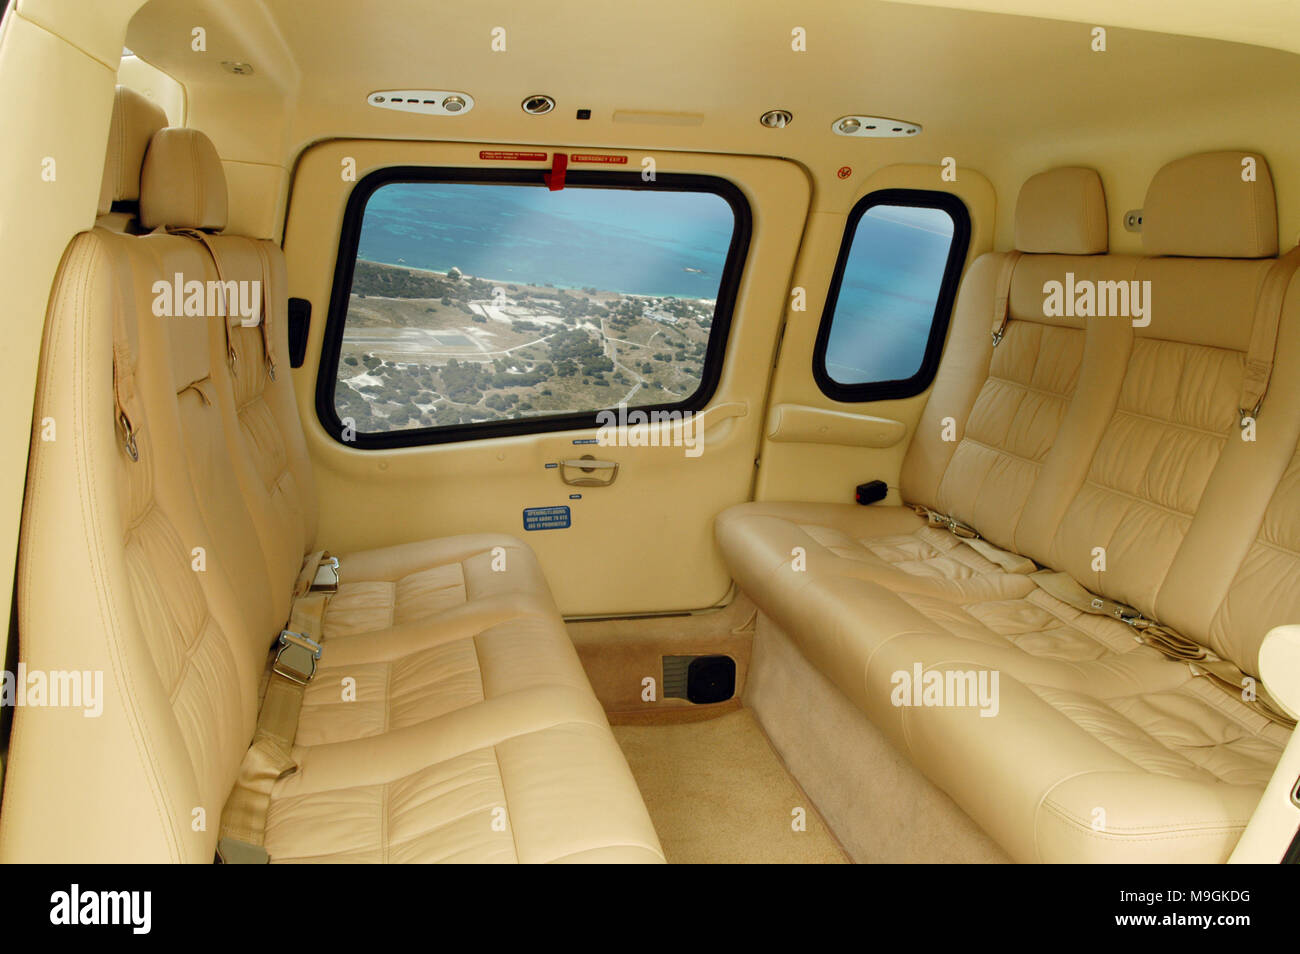 Panorama de l'intérieur d'un hélicoptère Agusta 109 avec sièges en cuir crème. Vide intérieur avec une vue montrant l'hauteur visible par windows. Banque D'Images